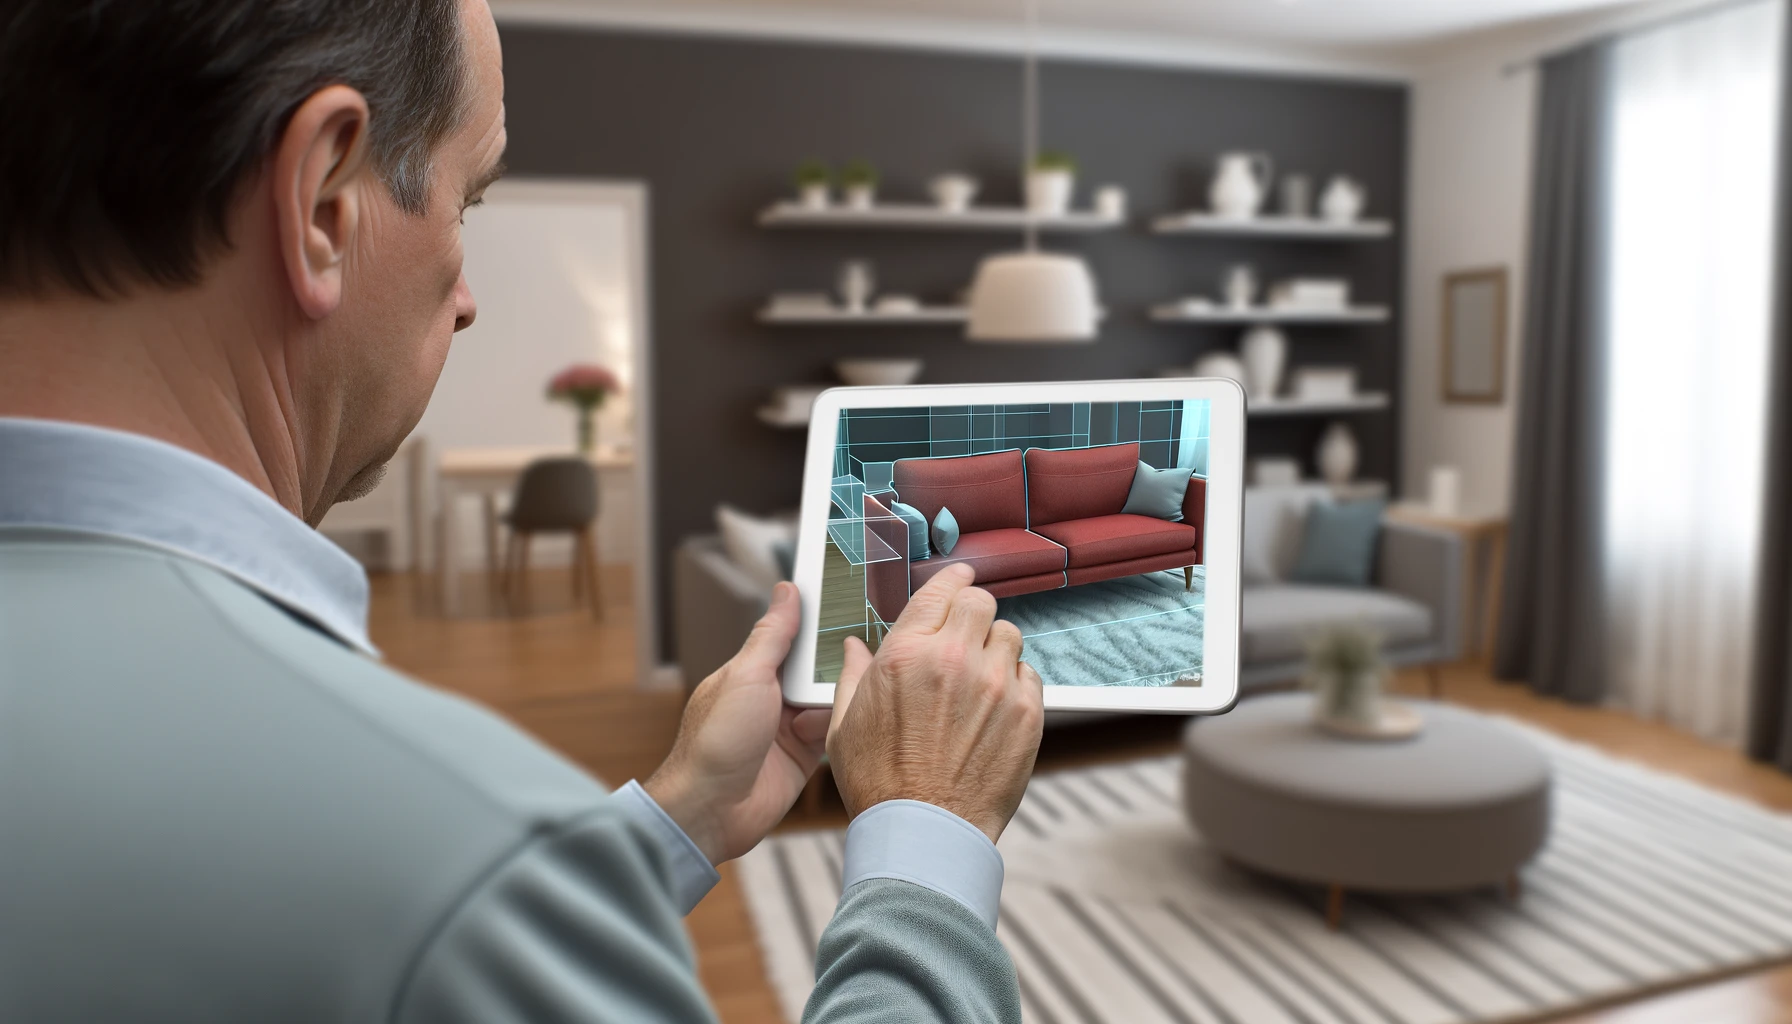 Un comprador utilizando un dispositivo móvil para colocar muebles virtuales en su sala de estar y ver cómo quedan. La imagen muestra a un hombre de mediana edad sosteniendo una tableta que muestra un modelo 3D de un sofá en realidad aumentada, como si realmente estuviera en la habitación.